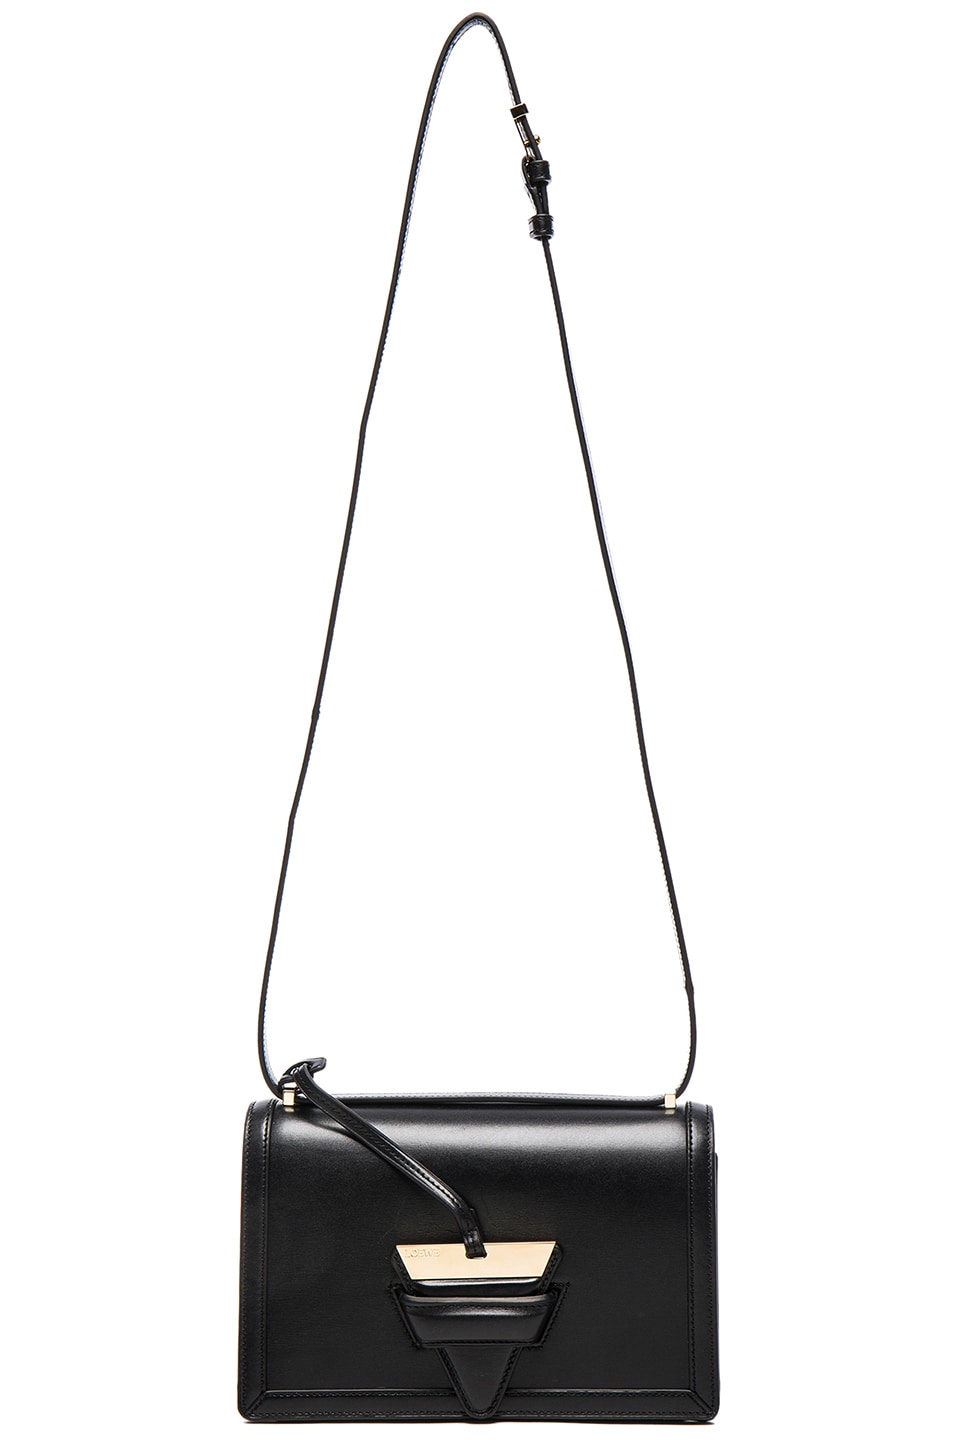 Loewe Barcelona Bag in Black | FWRD